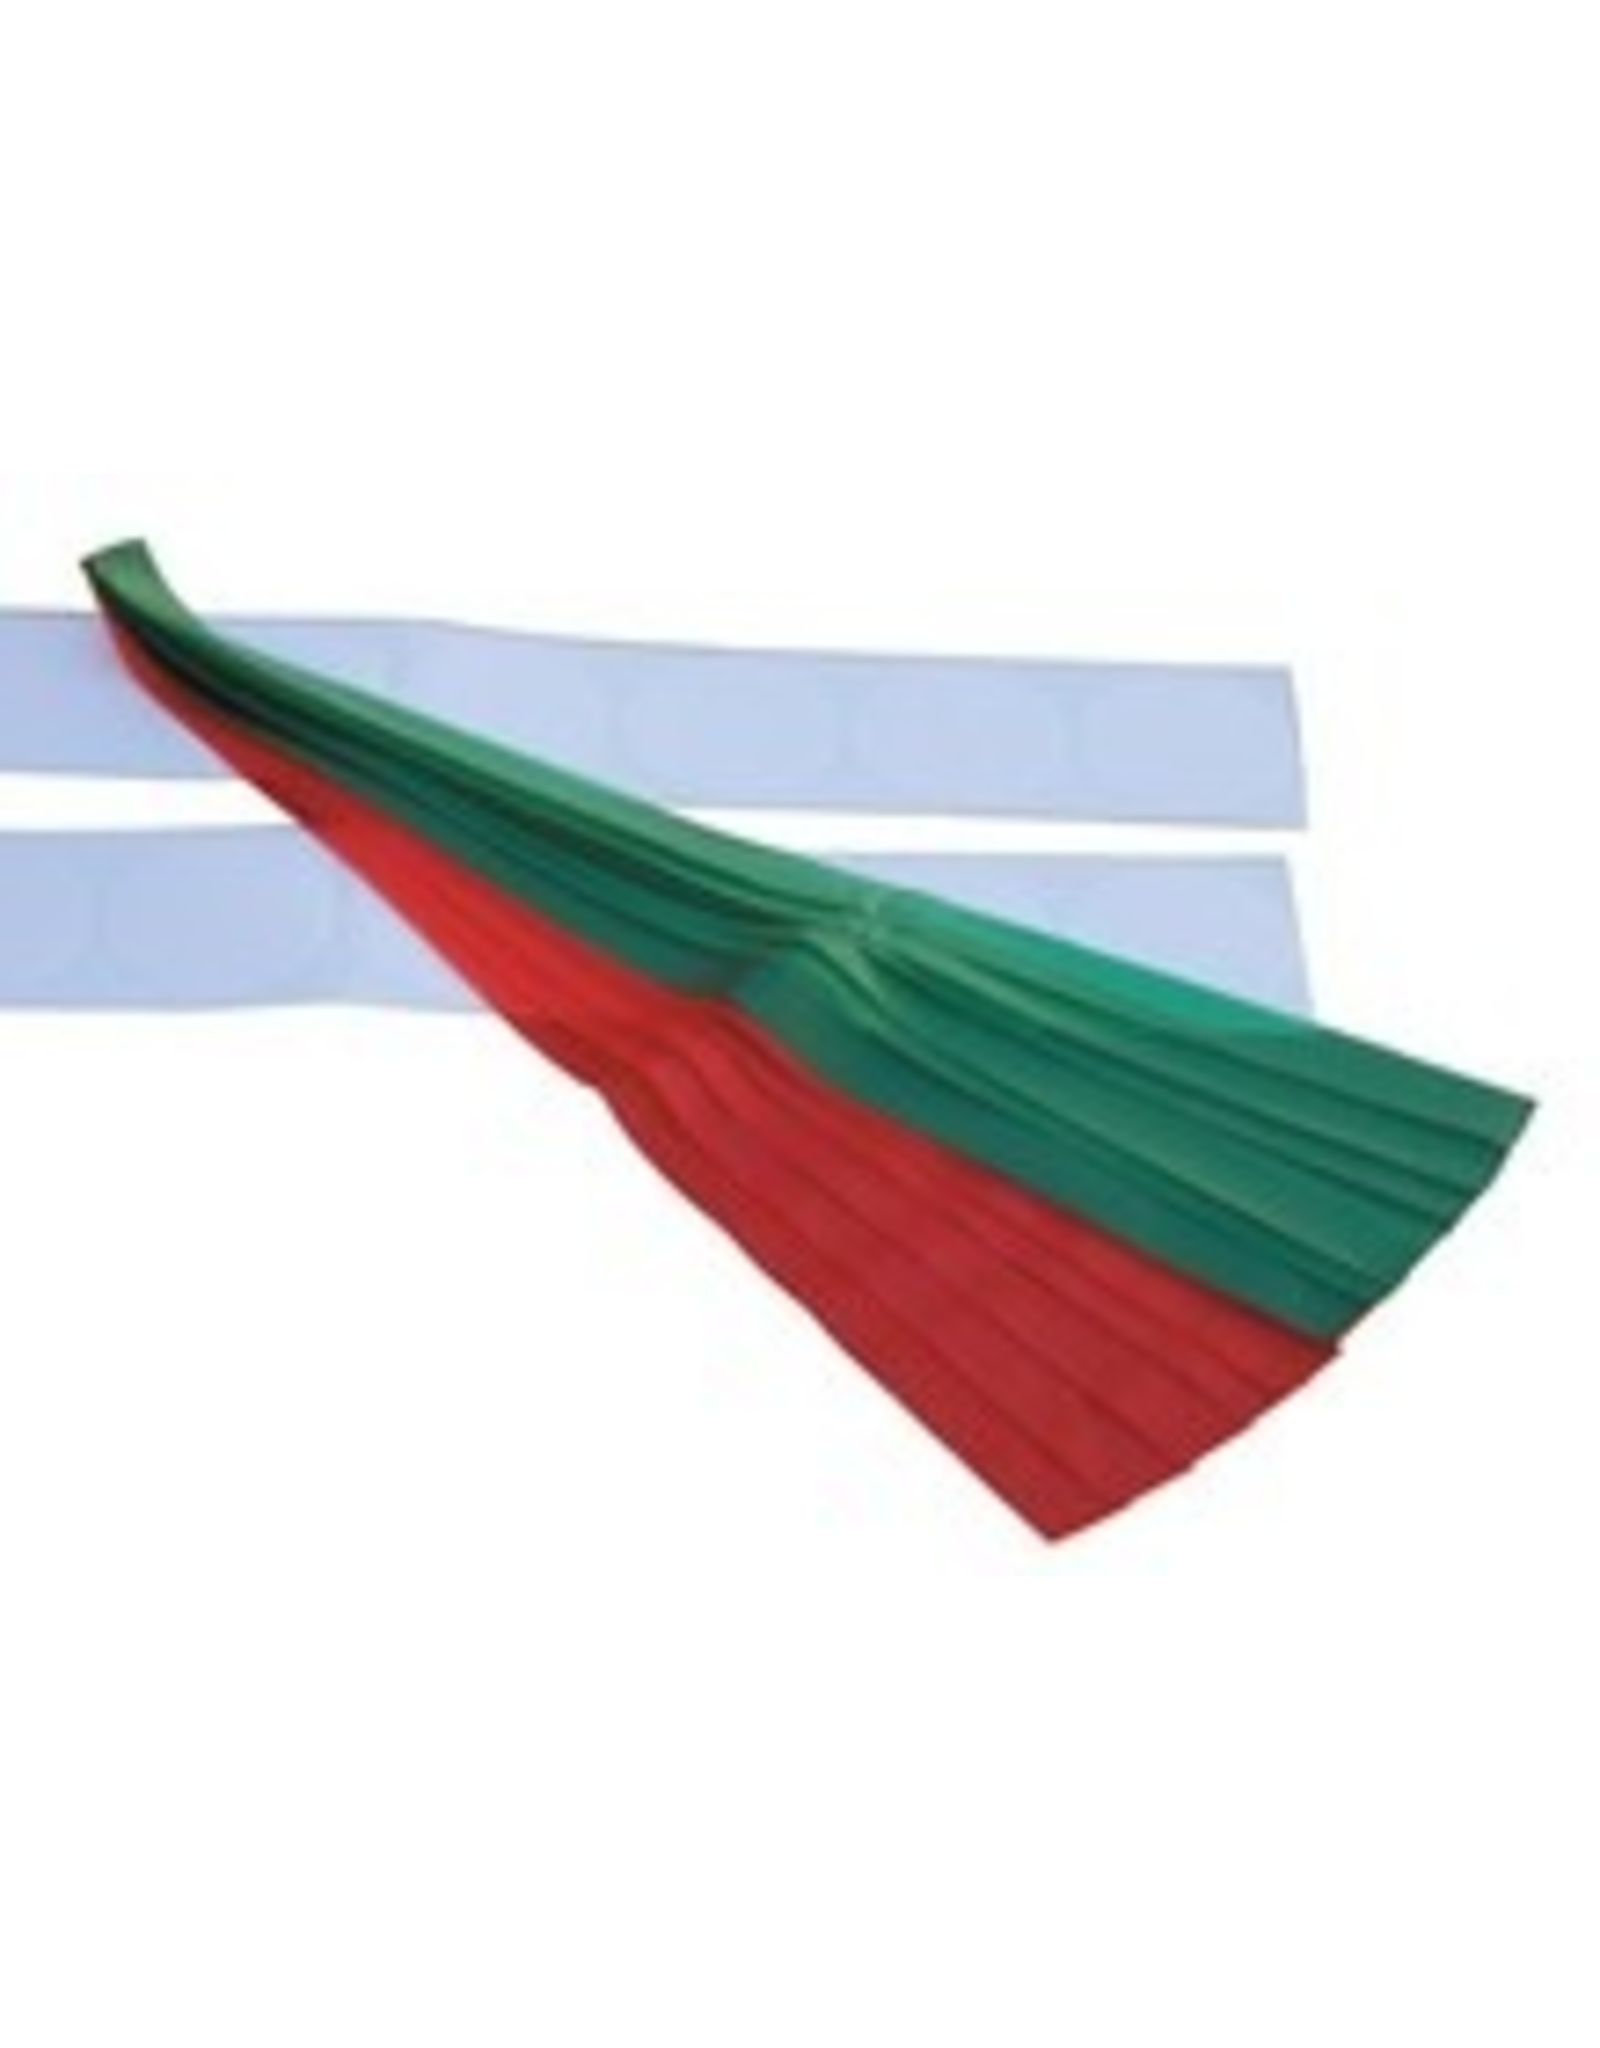 Hobie AIR FLOW TELS, RED / GREEN